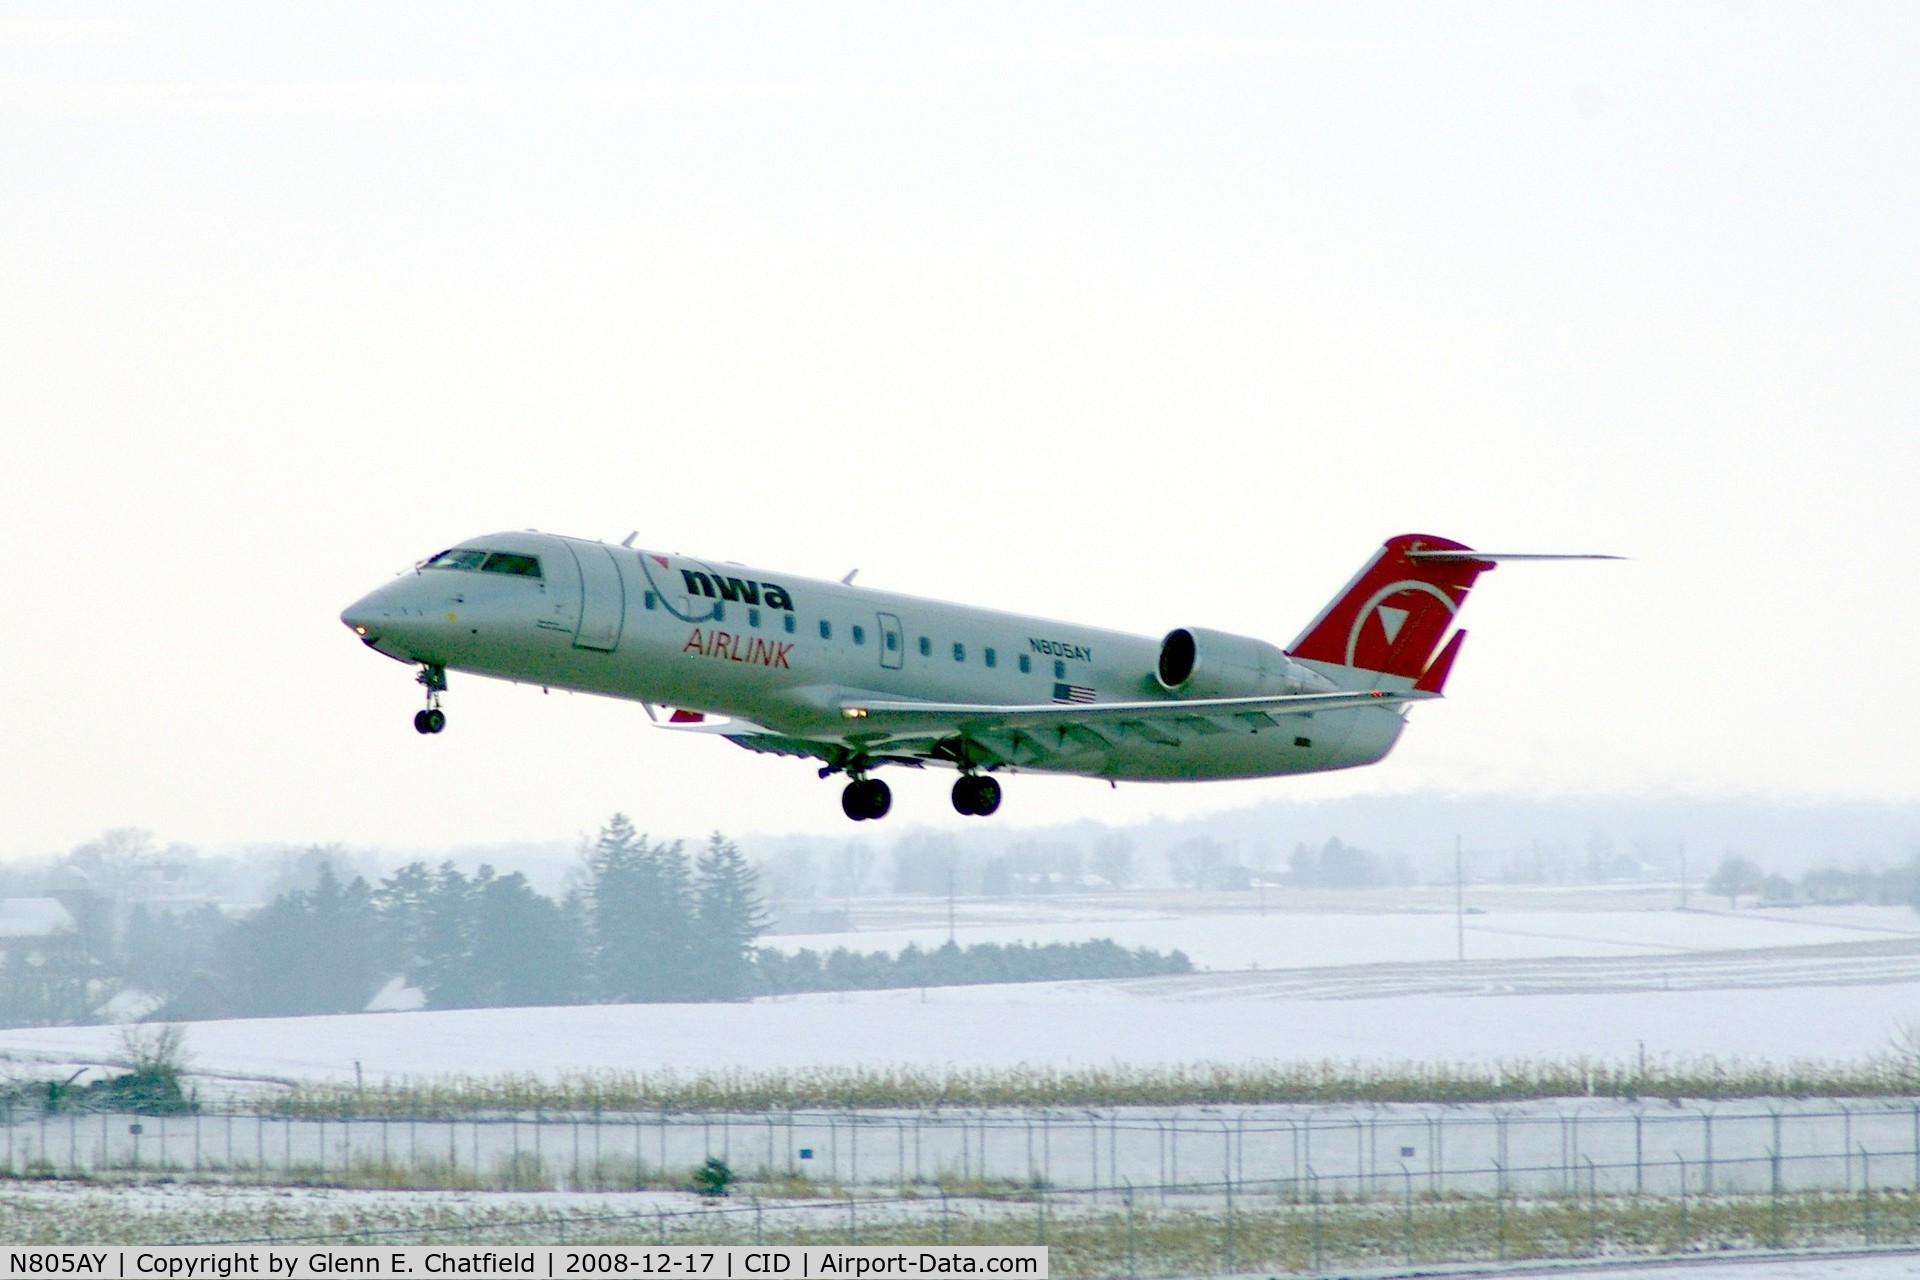 N805AY, 2005 Bombardier CRJ-200LR (CL-600-2B19) C/N 8005, Departing Runway 9.